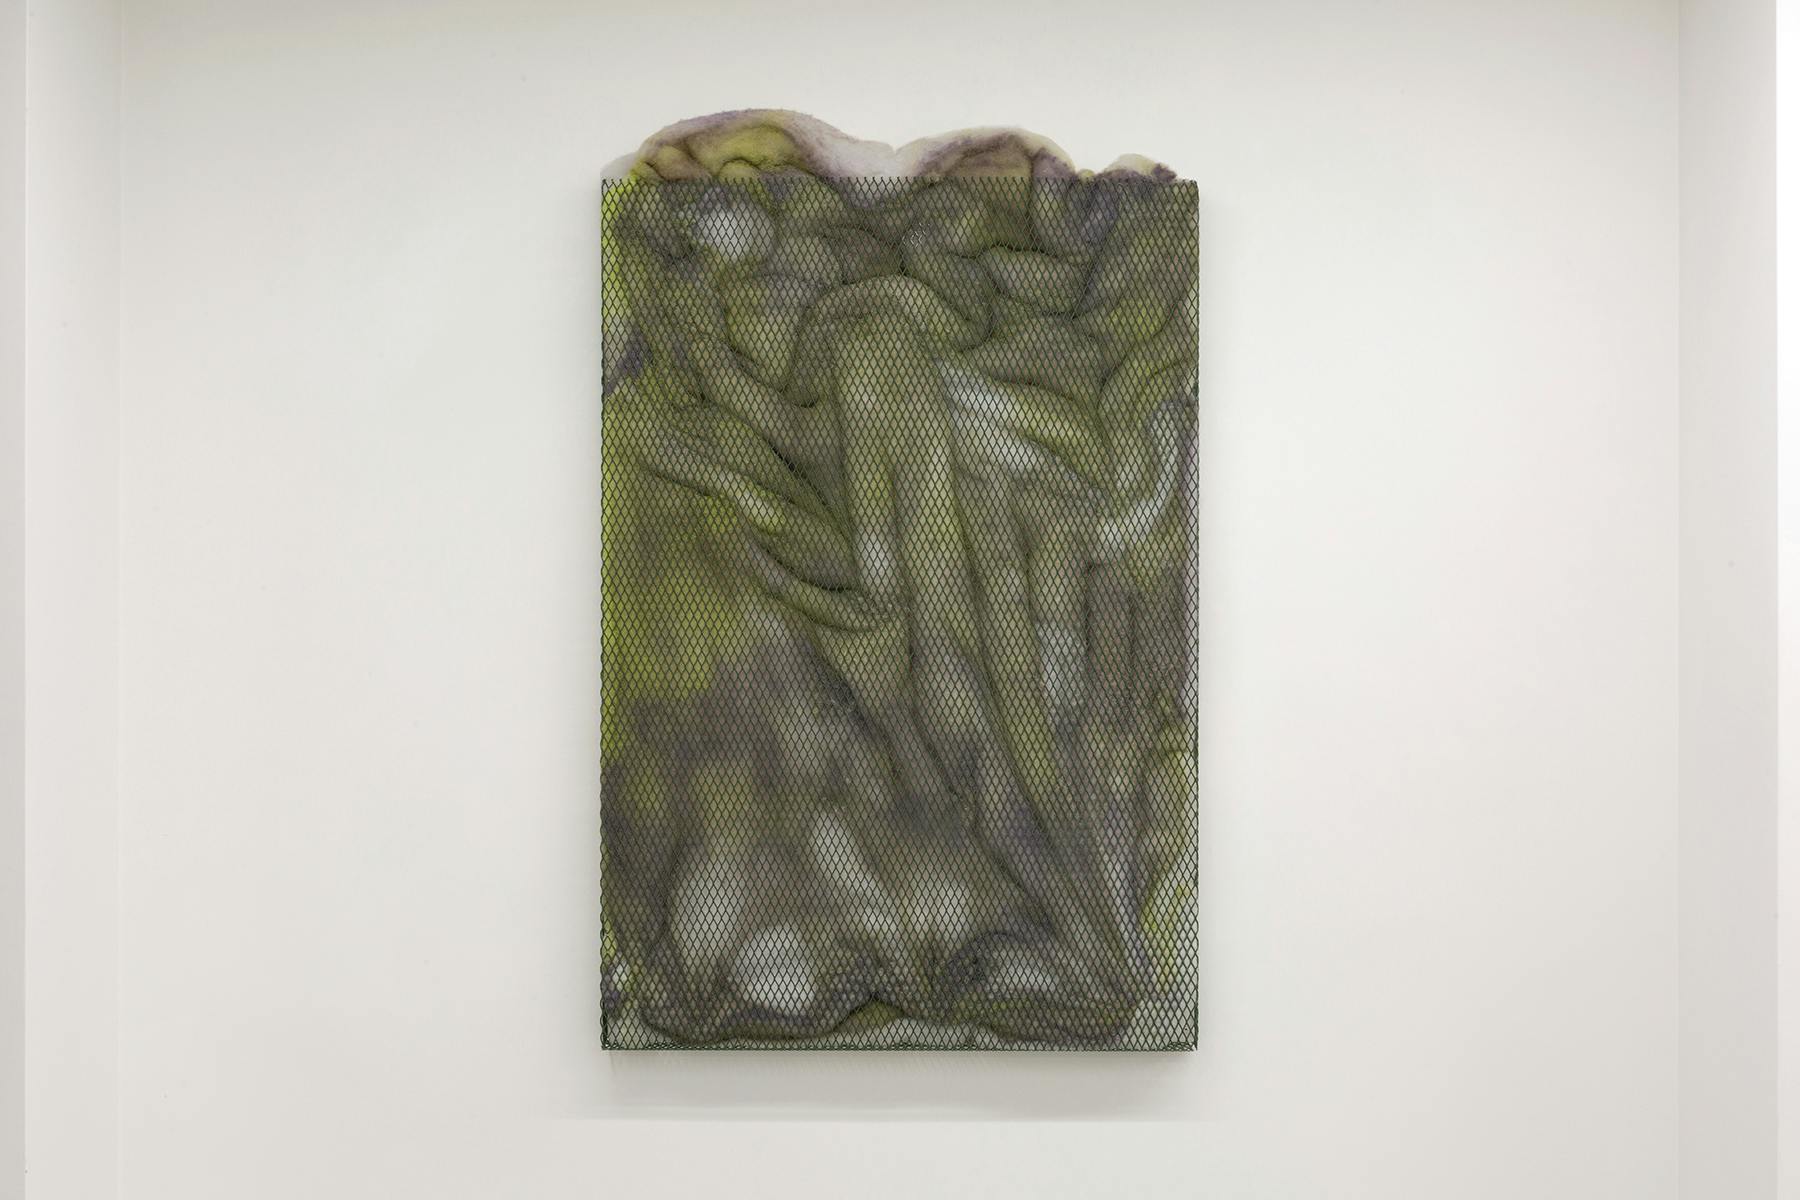 Deserto #345, Alessandro Costanzo, 2021, acrilico su ovatta sintetica e rete metallica, 80 x 55 x 5 cm